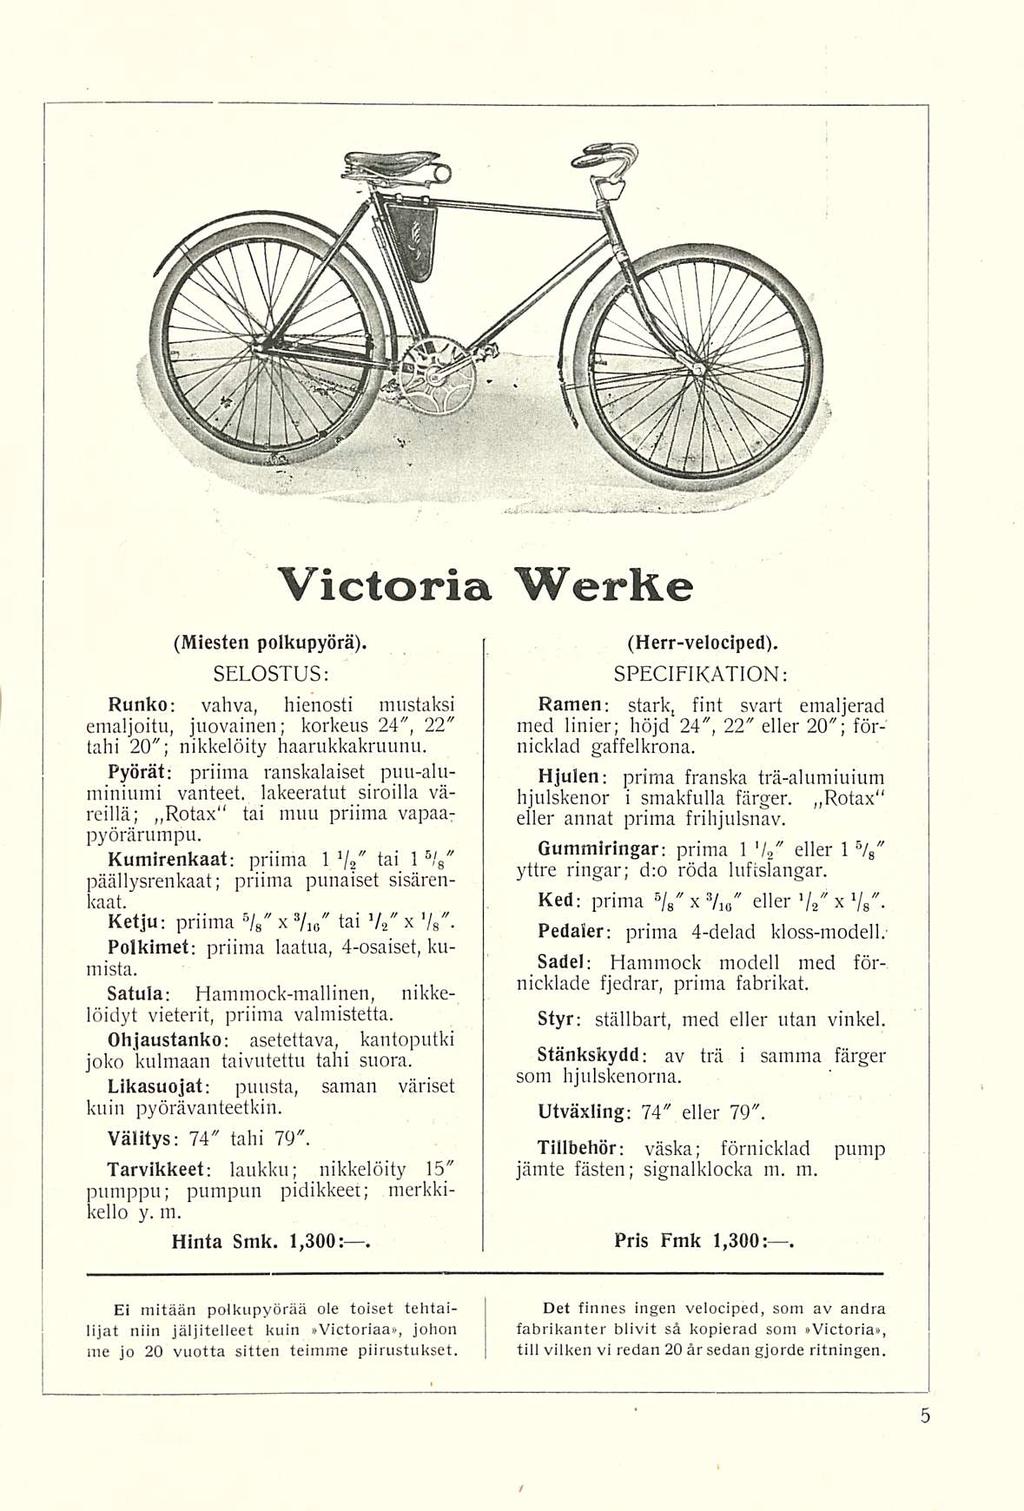 Victoria WerKe (Miesten polkupyörä). Runko: vahva, hienosti mustaksi emaljoitu, juovainen; korkeus 24, 22 tahi 20; nikkelöity haarukkakruunu.